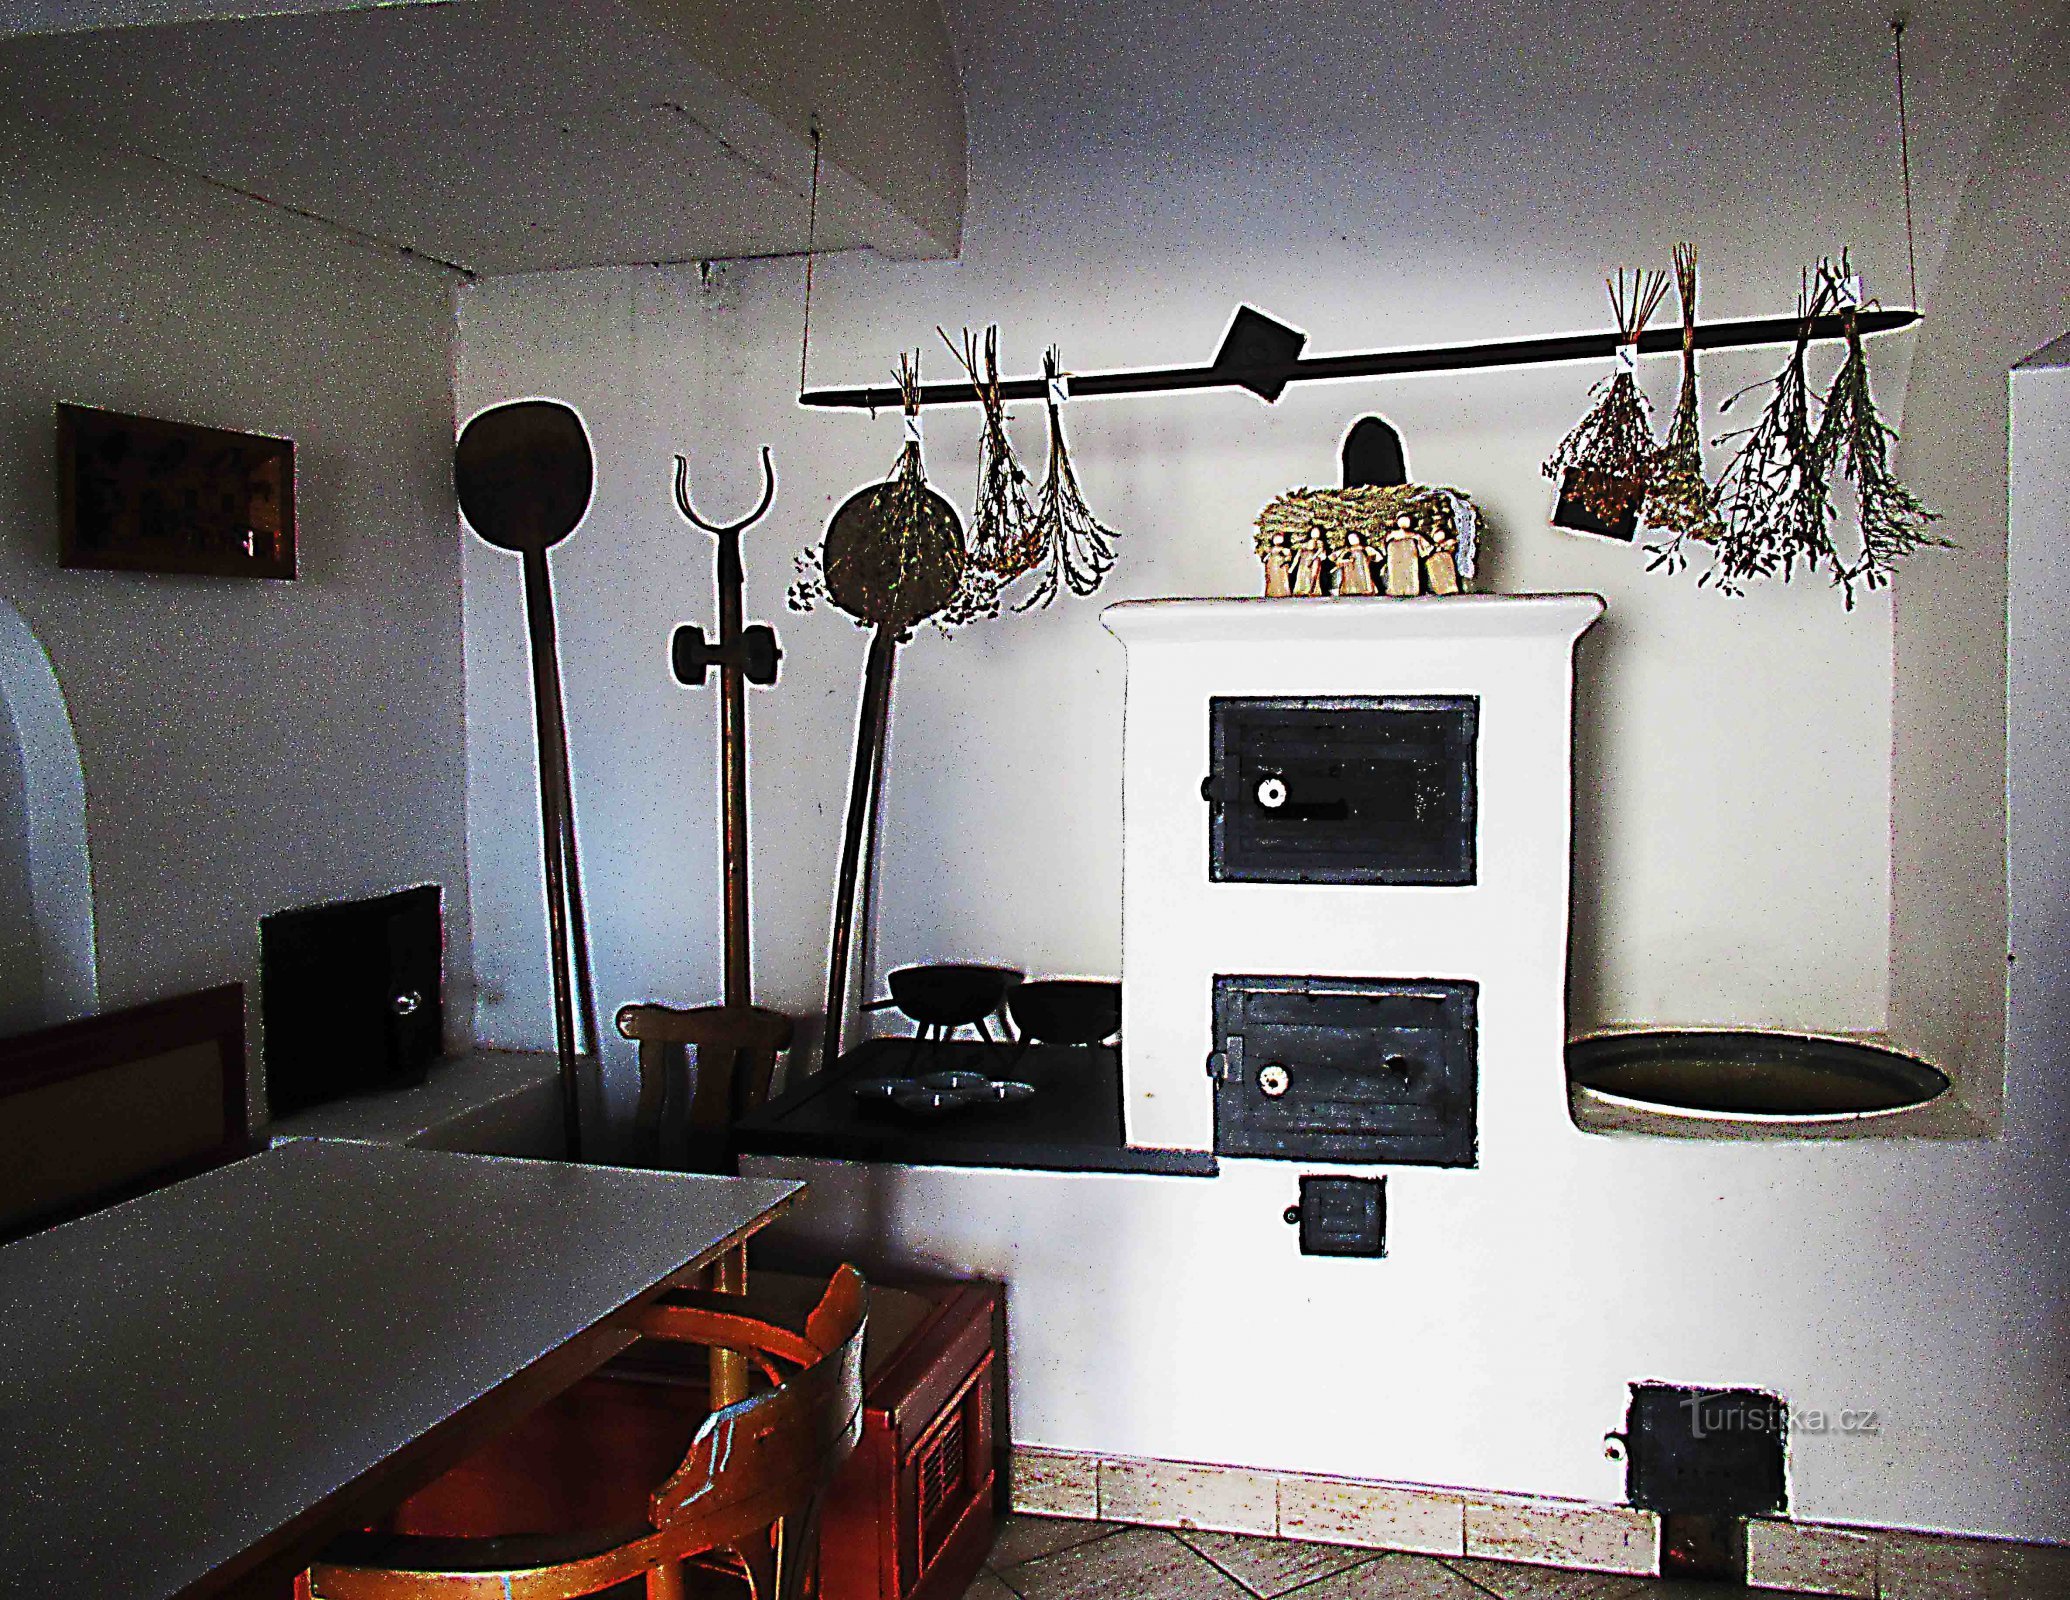 Et lille museum for smedearbejde i Zemans smedje i Holešov